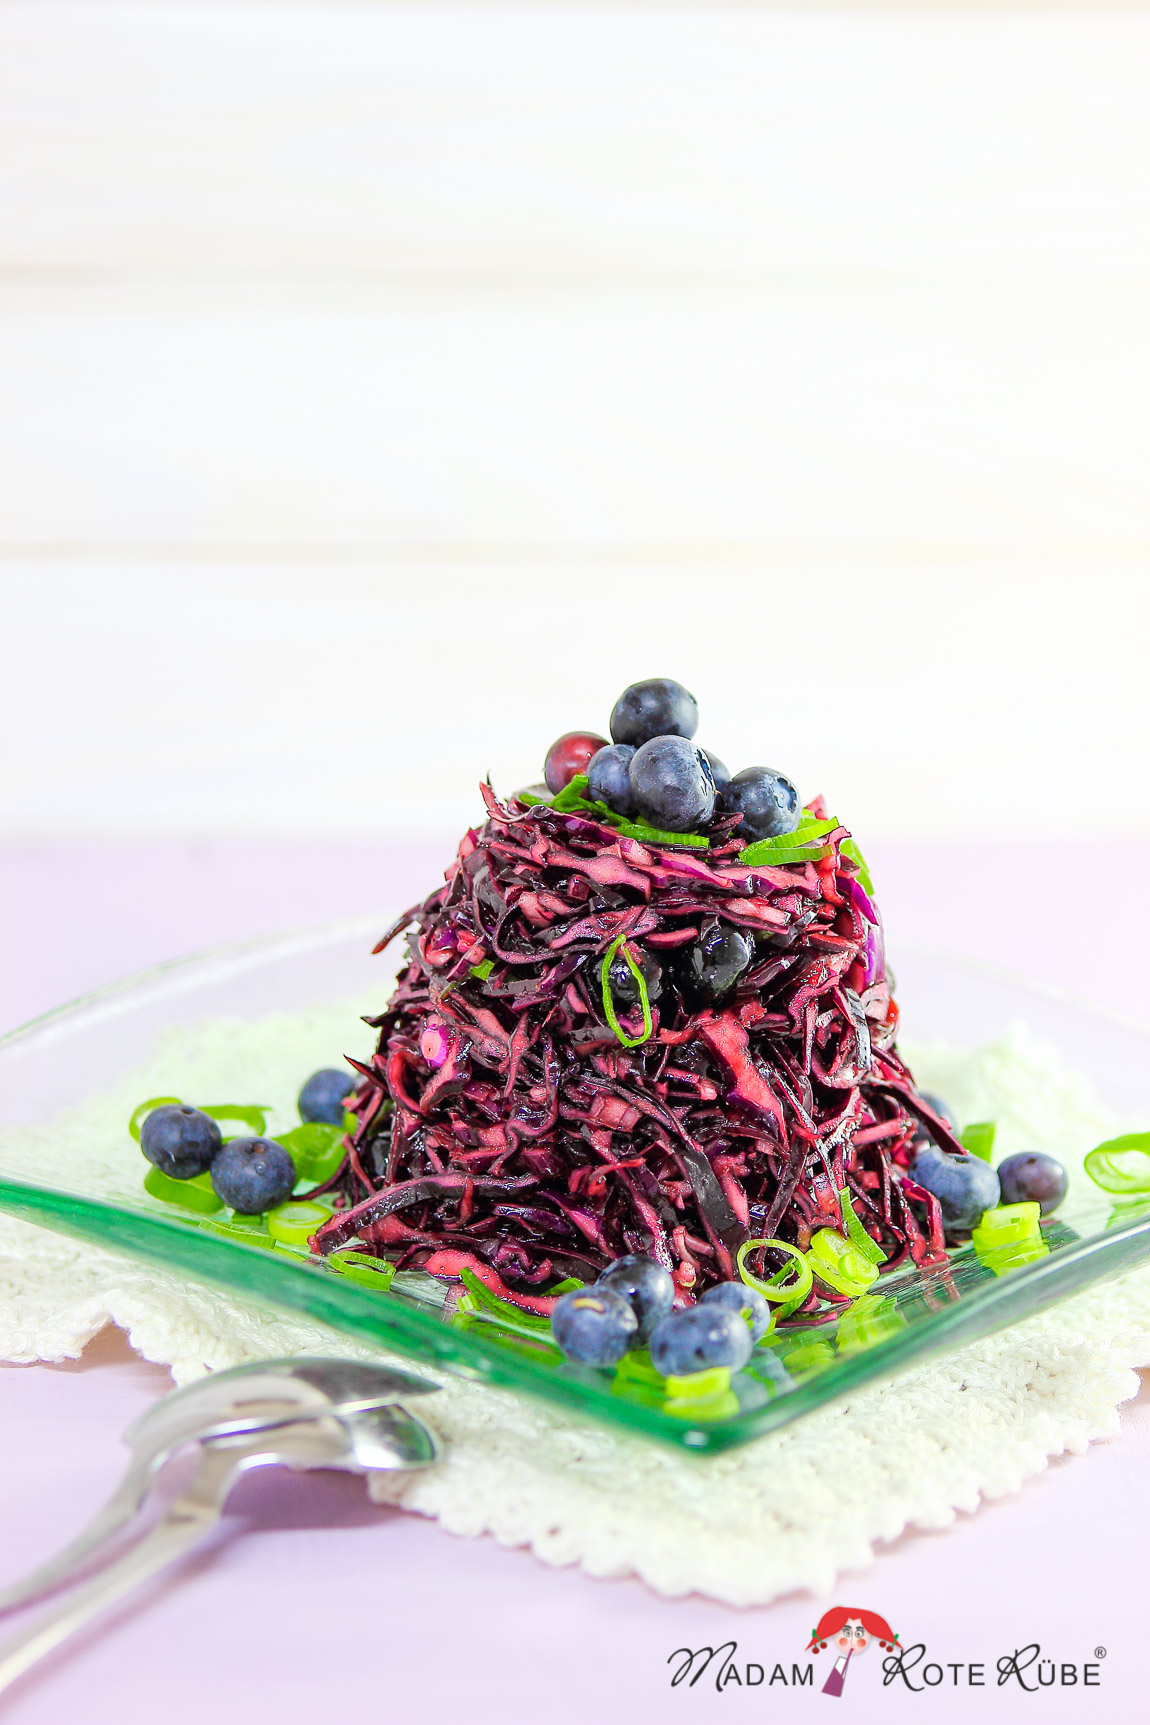 Madam Rote Rübe - Rotkohlsalat mit Blaubeeren und Lauchzwiebeln 